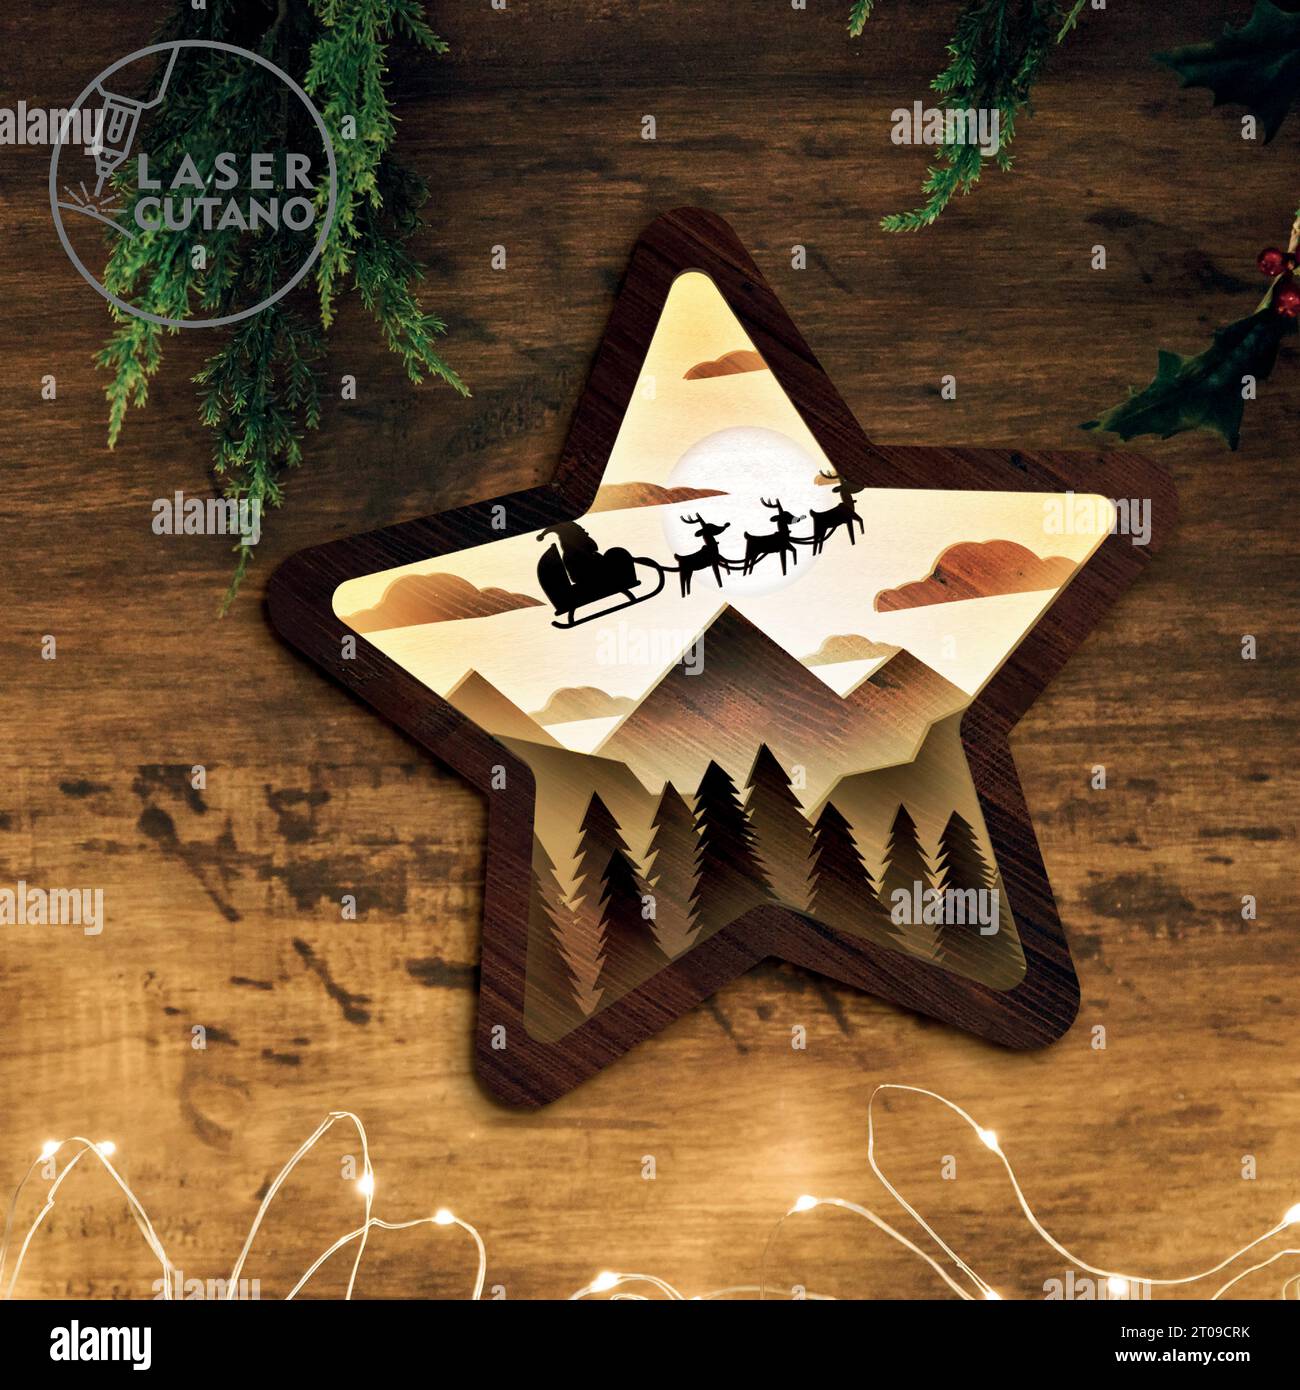 Ti presentiamo il nostro splendido modello a strati con taglio laser Christmas Star, un accattivante prodotto in legno stratificato che aggiunge un tocco di bellezza naturale. Illustrazione Vettoriale